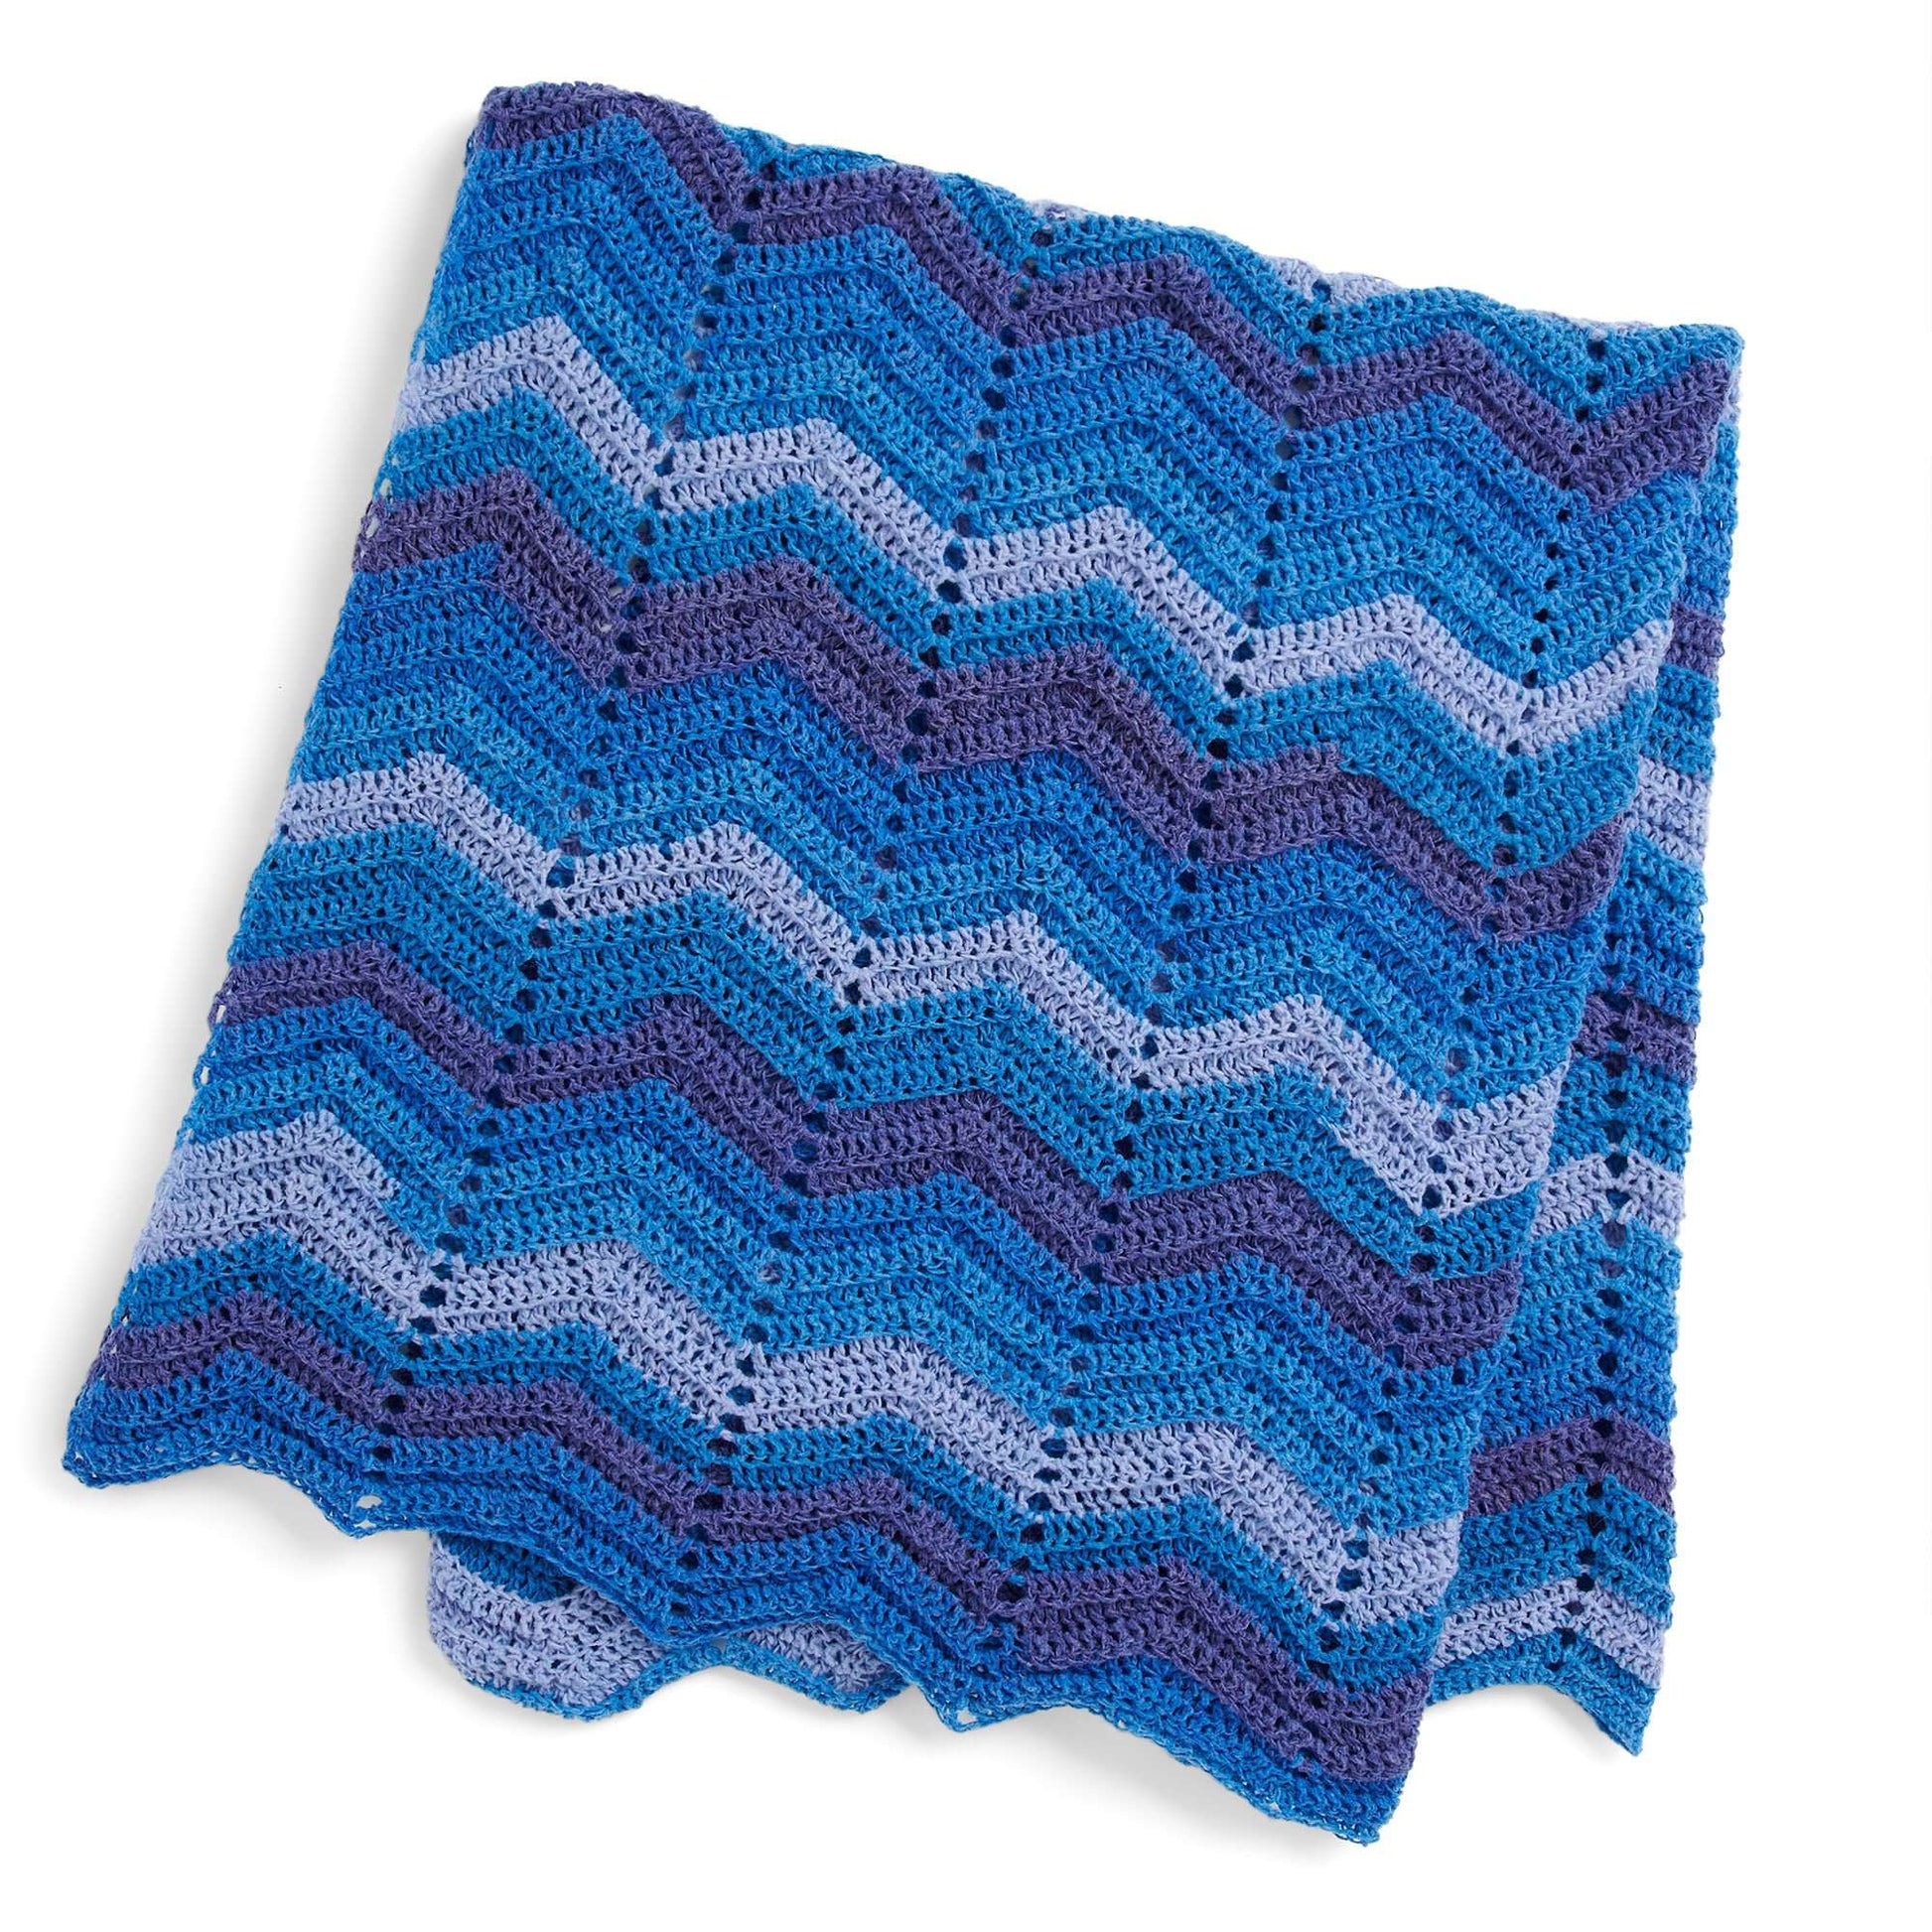 Crochet a Blanket in 6 HOURS! Beginner friendly pattern